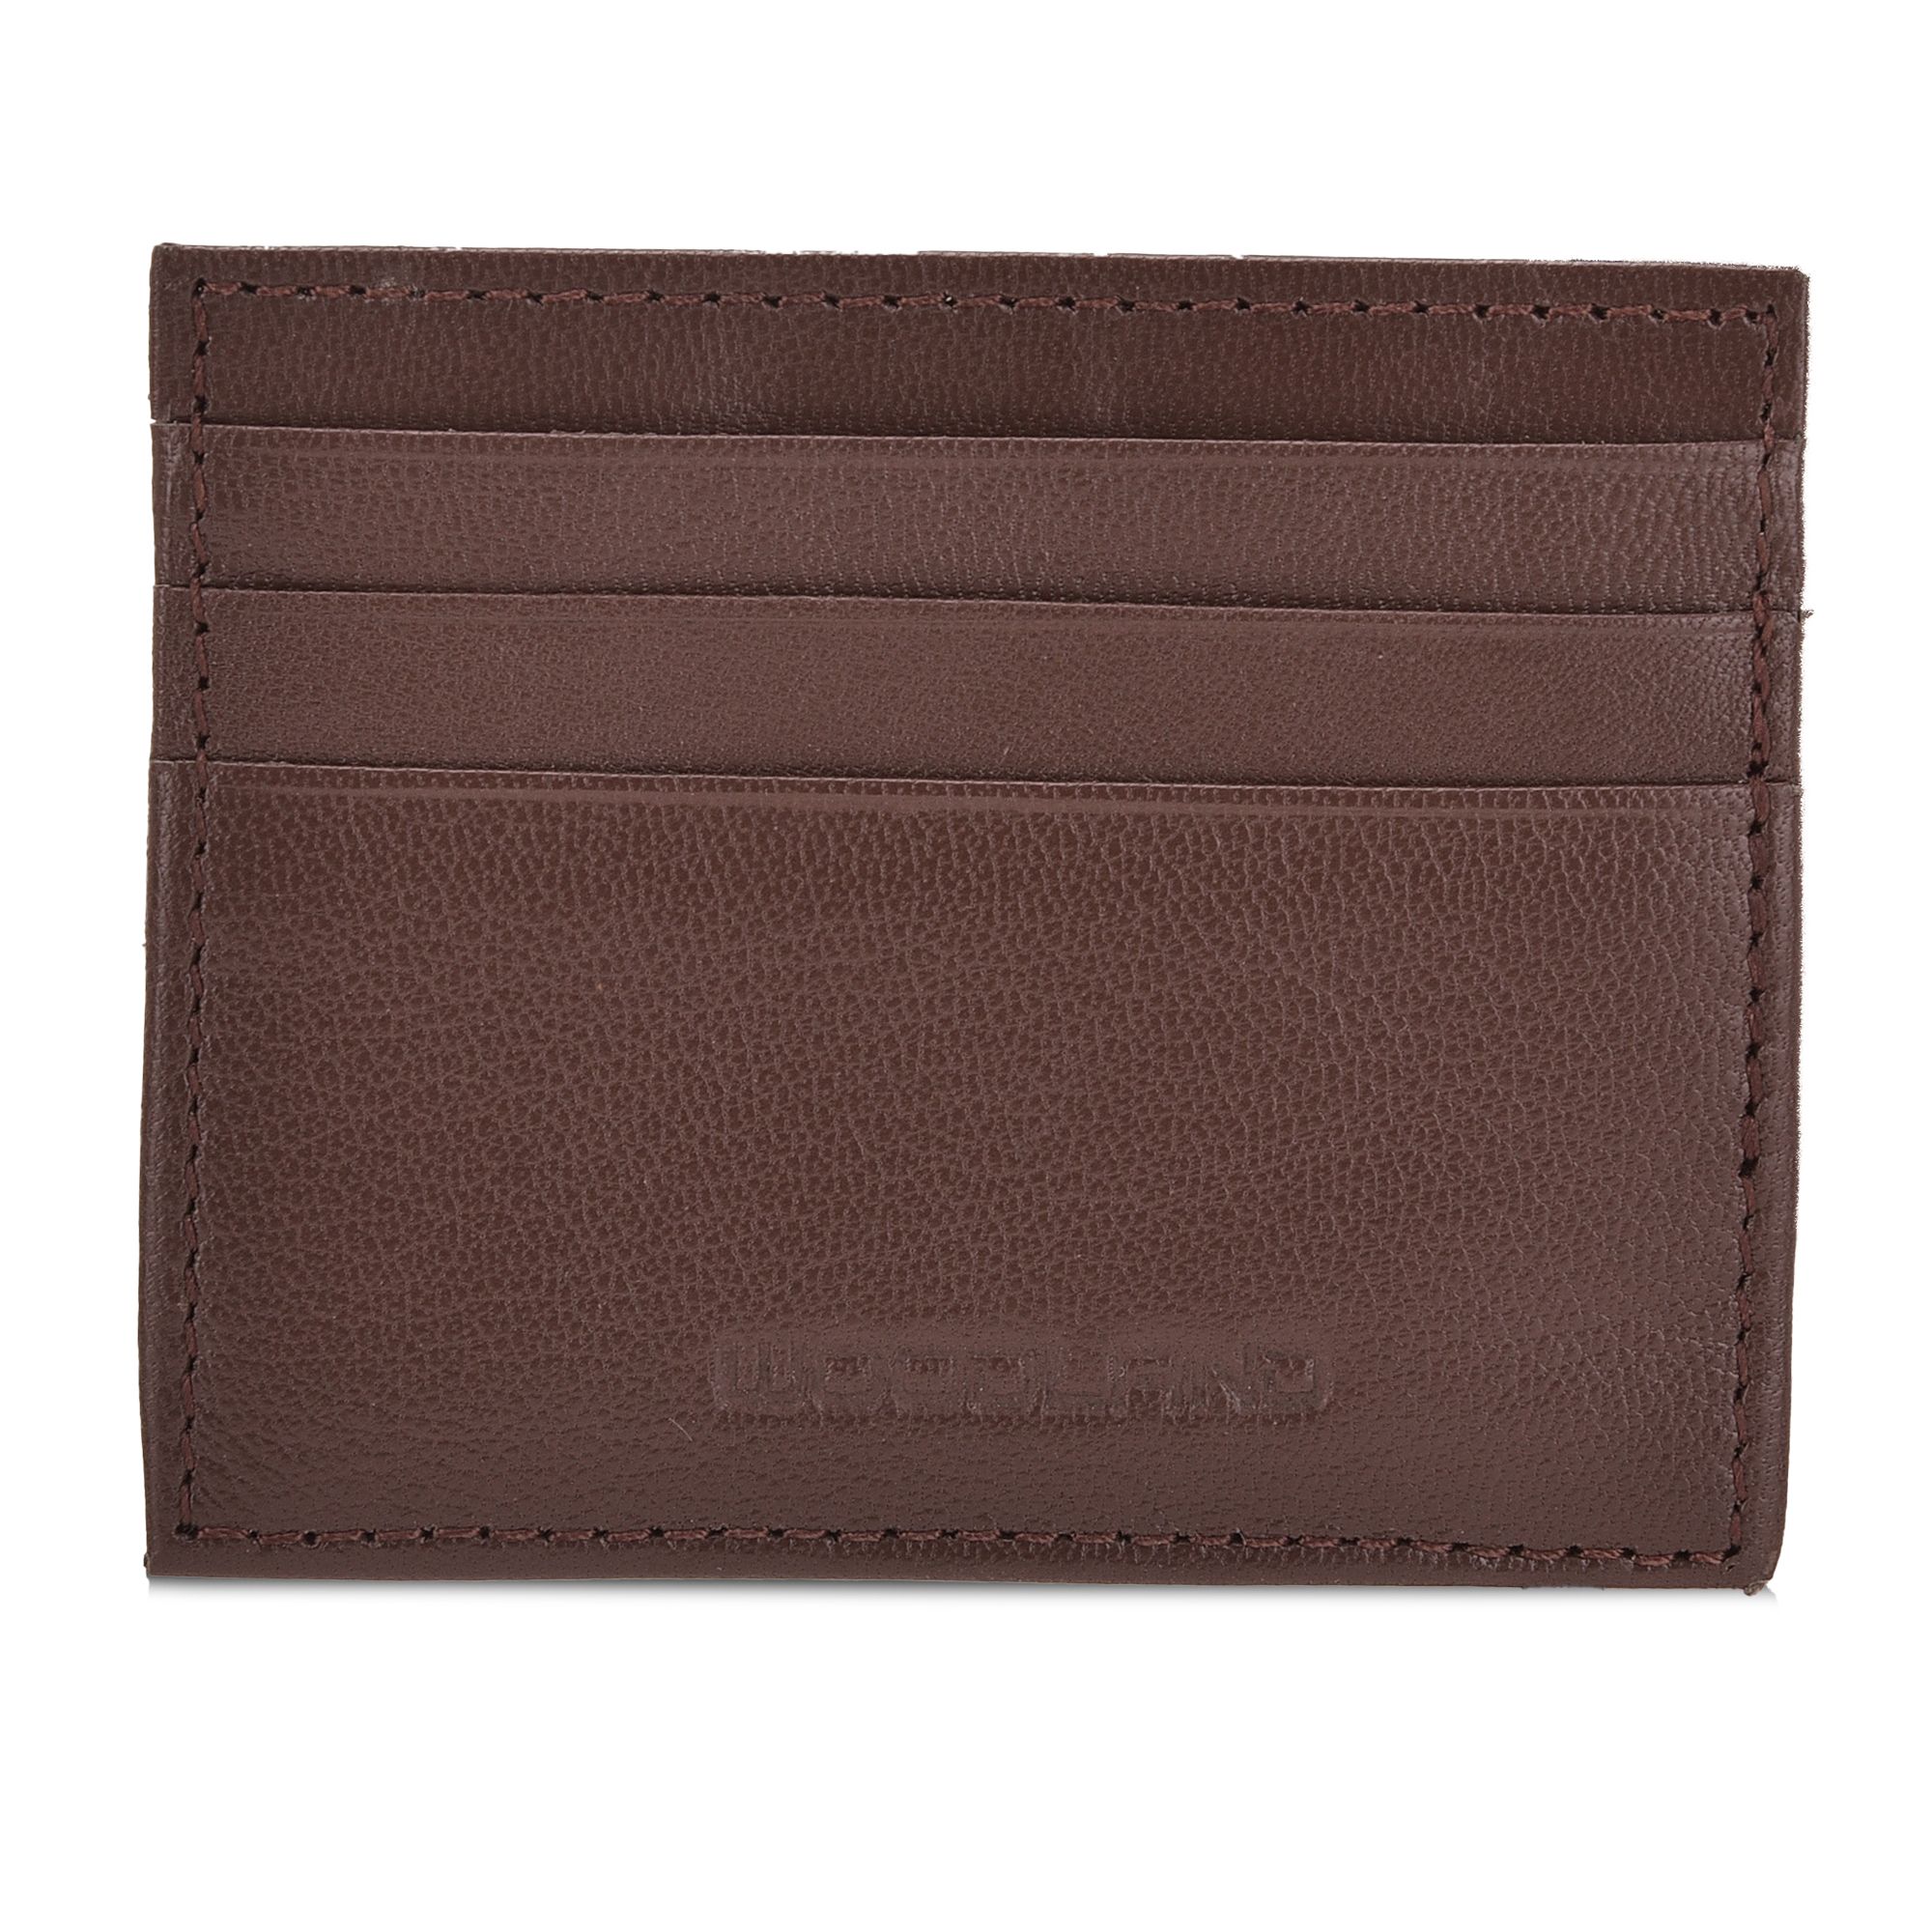 Brown/ tan bi-fold wallet